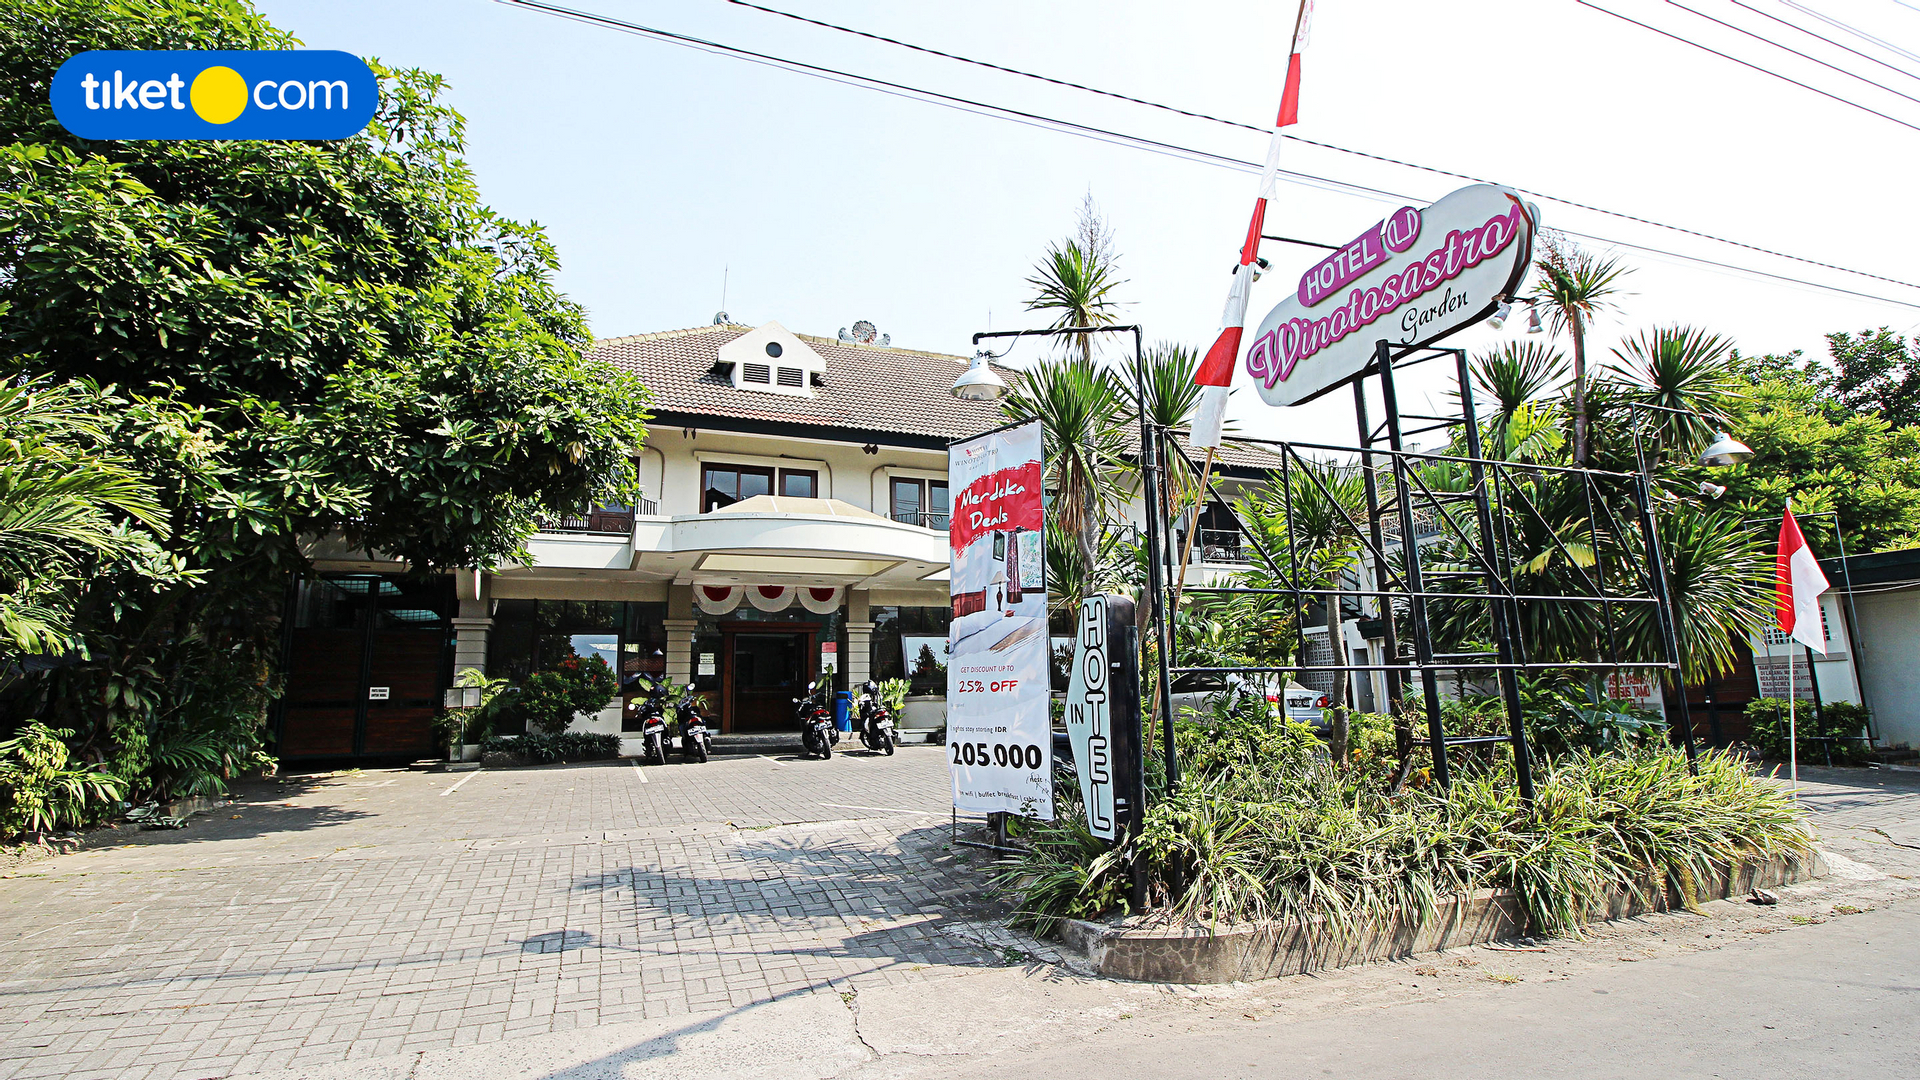 Hotel Winotosastro Garden, Yogyakarta